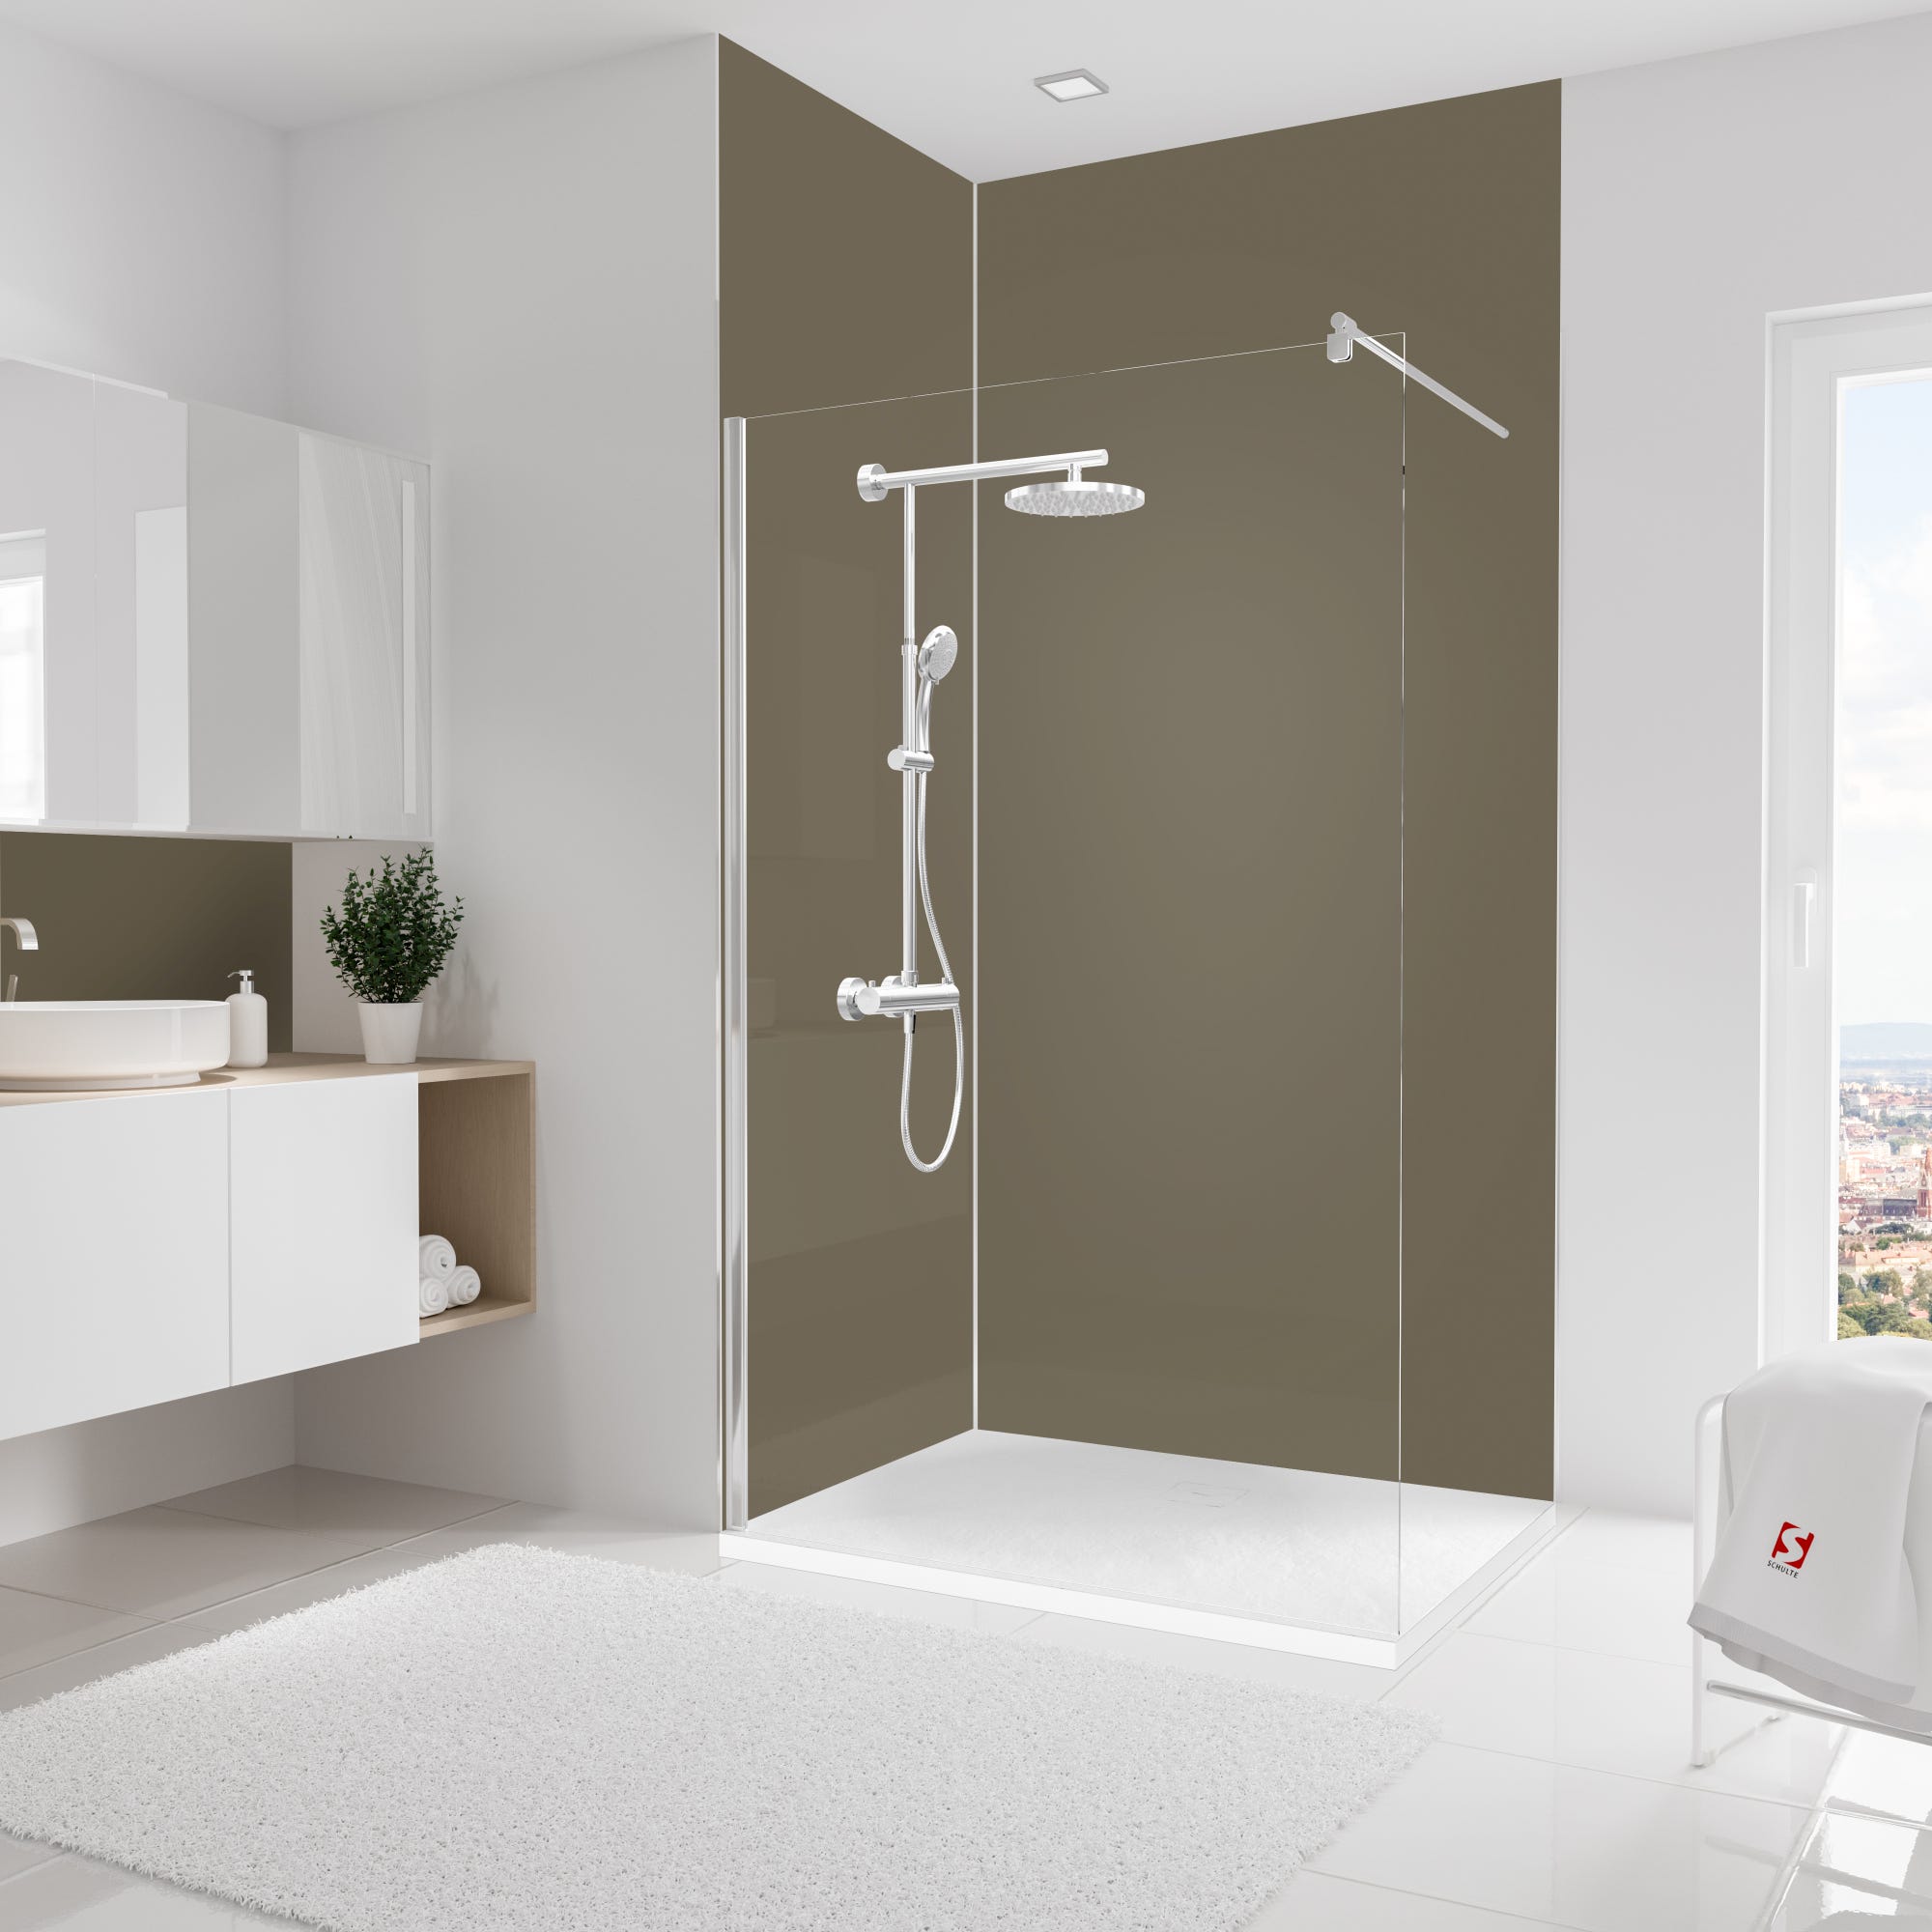 Schulte Pack de 2 panneaux muraux, 90 x 255 cm + 120 x 255 cm, revêtement pour douche et salle de bains, DécoDesign COULEUR, Taupe 0